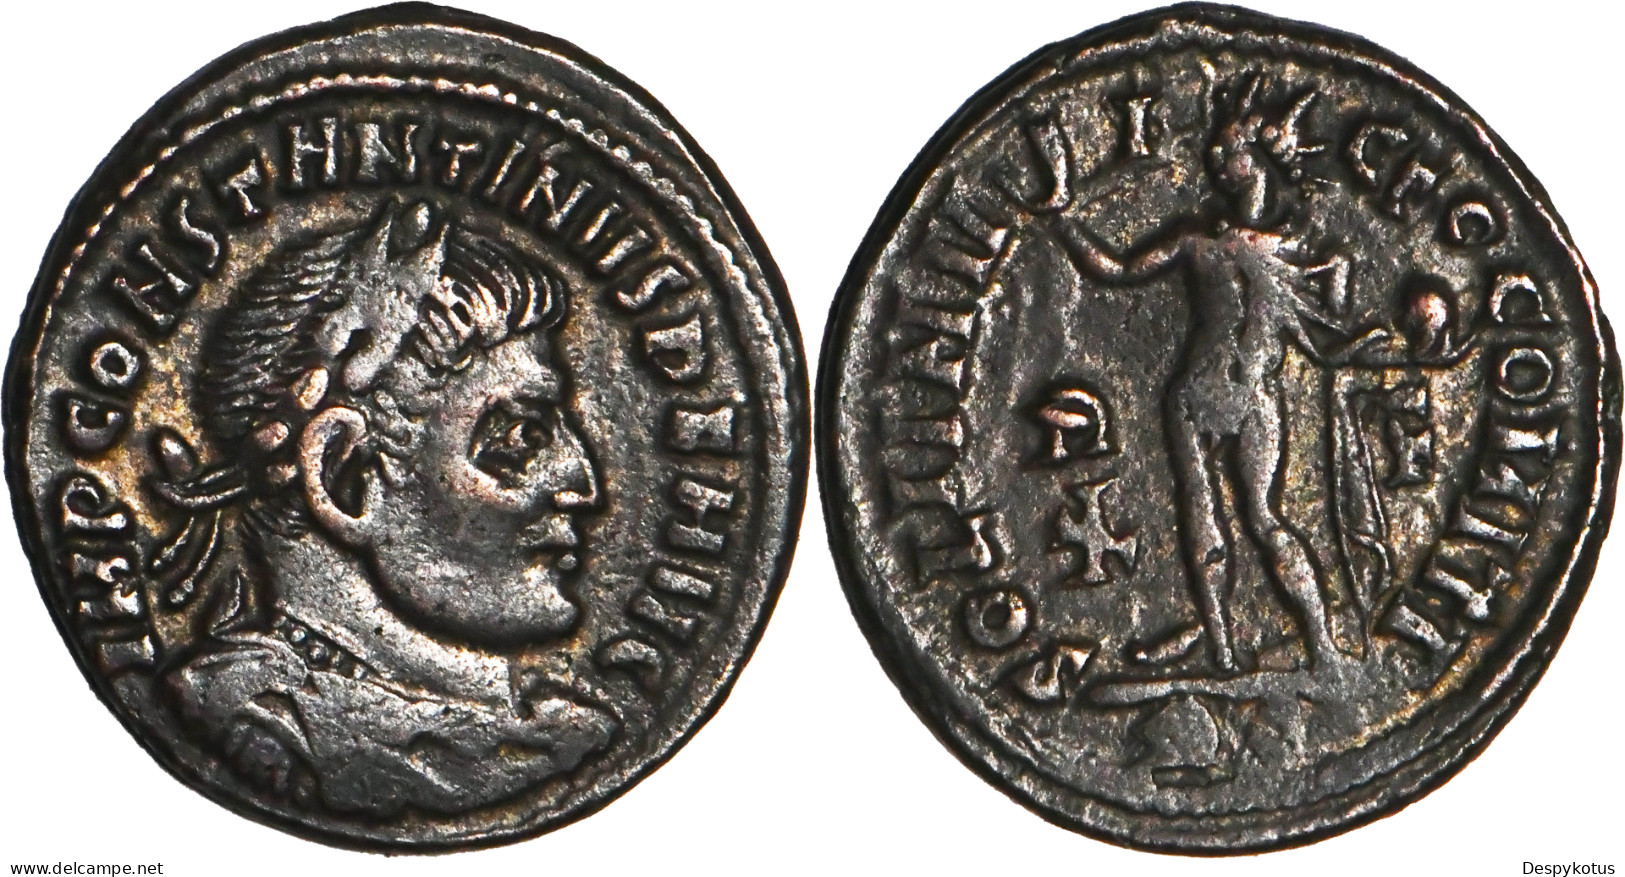 ROME - Centenionalis - CONSTANTIN I - SOLI INVICTO - ROME (RP) - 317 AD - RIC.27 - 19-142 - The Christian Empire (307 AD Tot 363 AD)